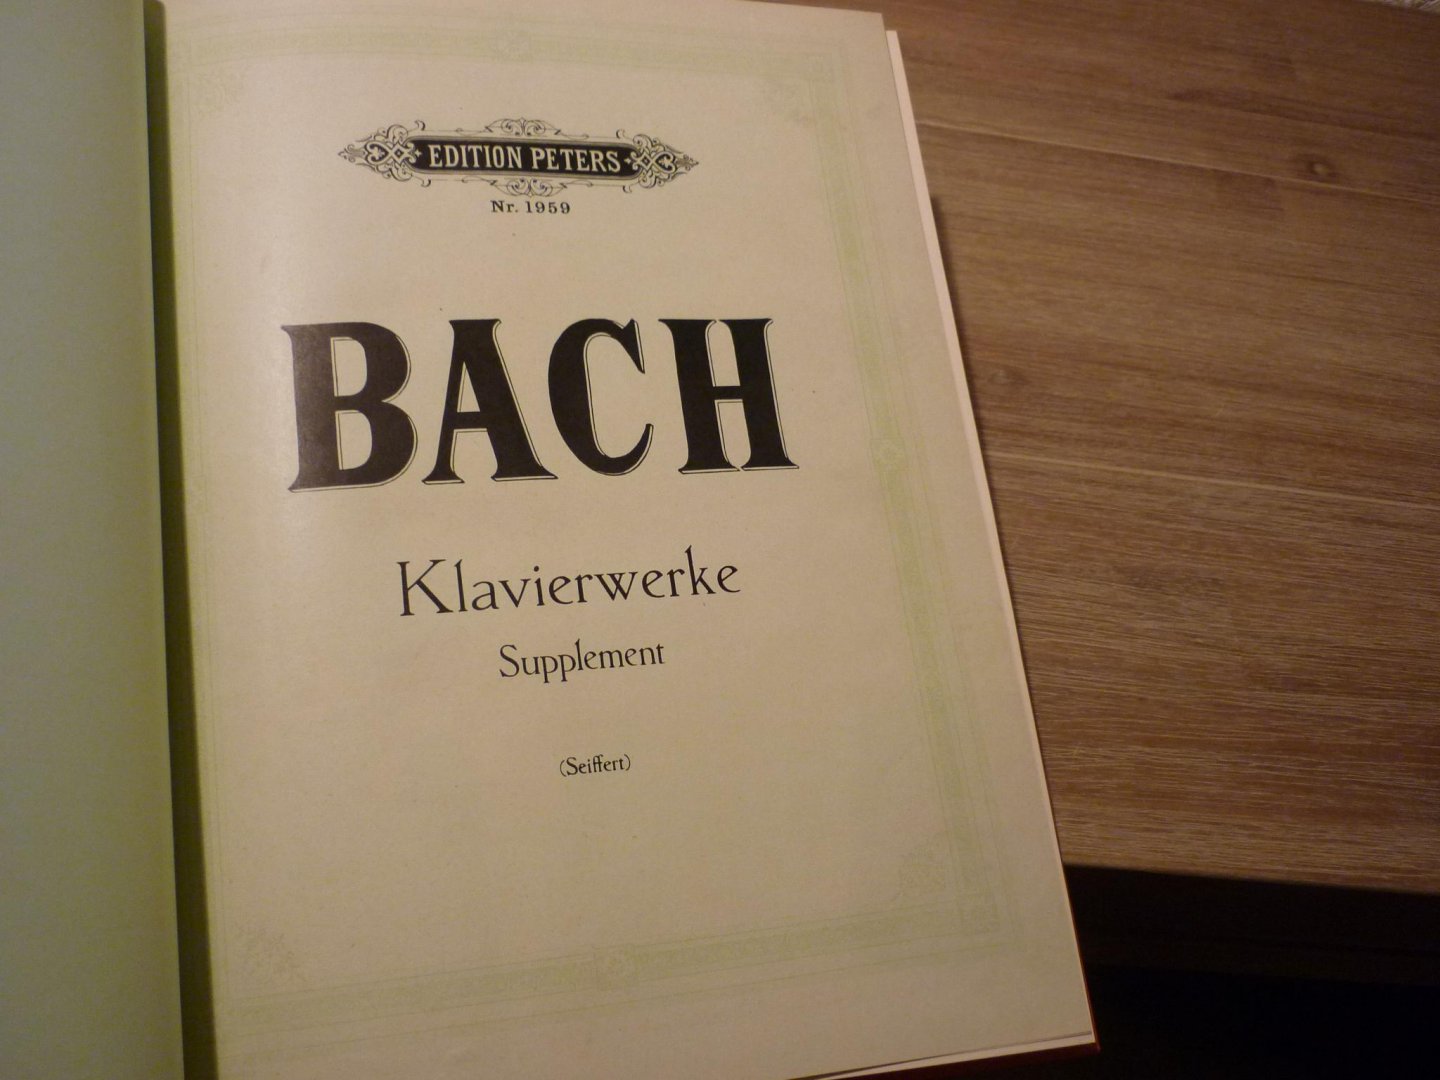 Bach J.S. (1685 – 1750) - Klavierwerke Supplement   /   Beliebte Praludien fur Klavier zu 2 handen